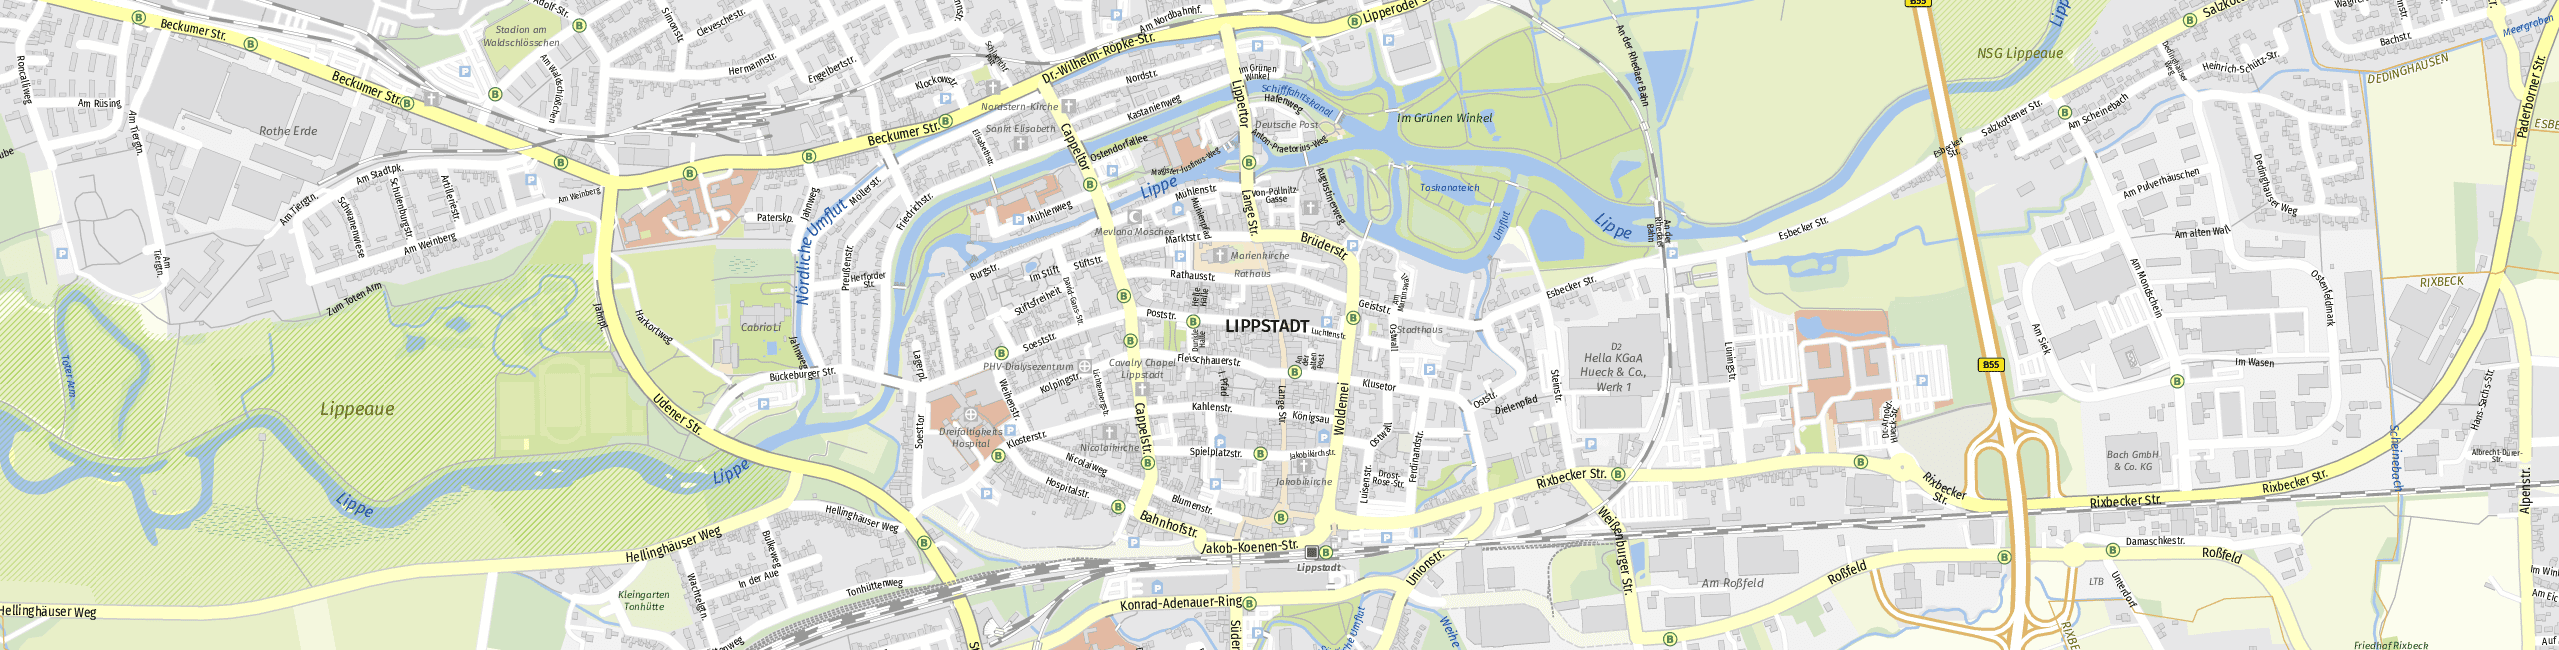 Stadtplan Lippstadt zum Downloaden.